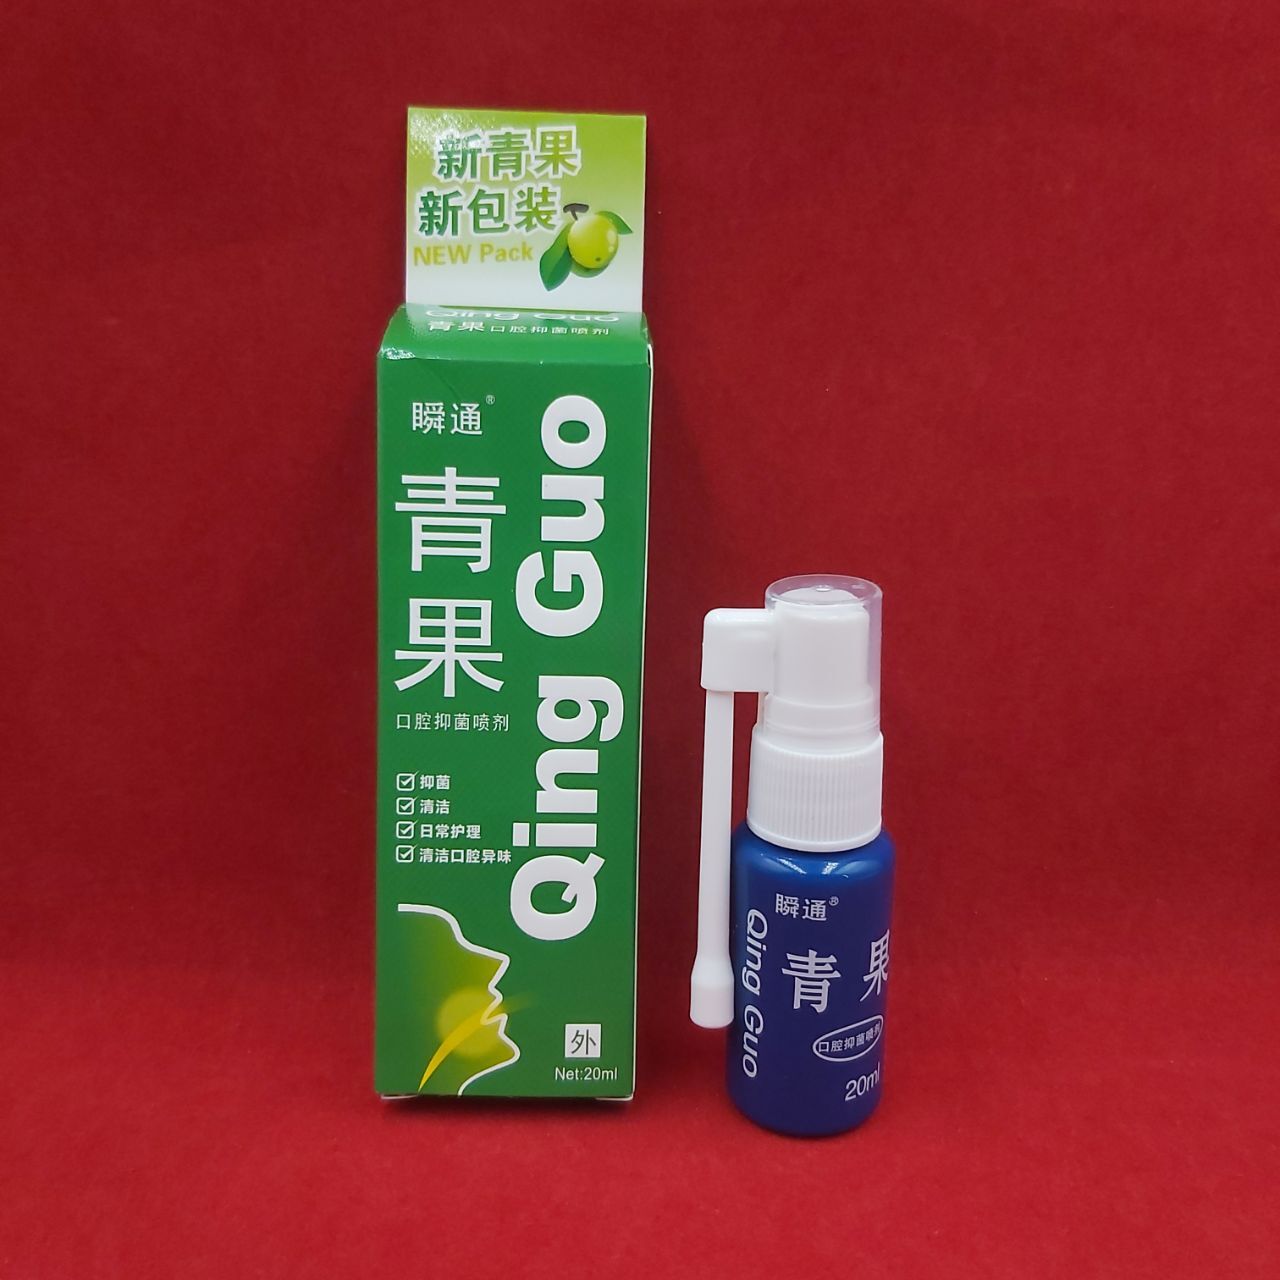 Антибактериальный спрей для полости рта "Жуйсян Цингуо Ицзюнь" (Qing Guo) 20 мл